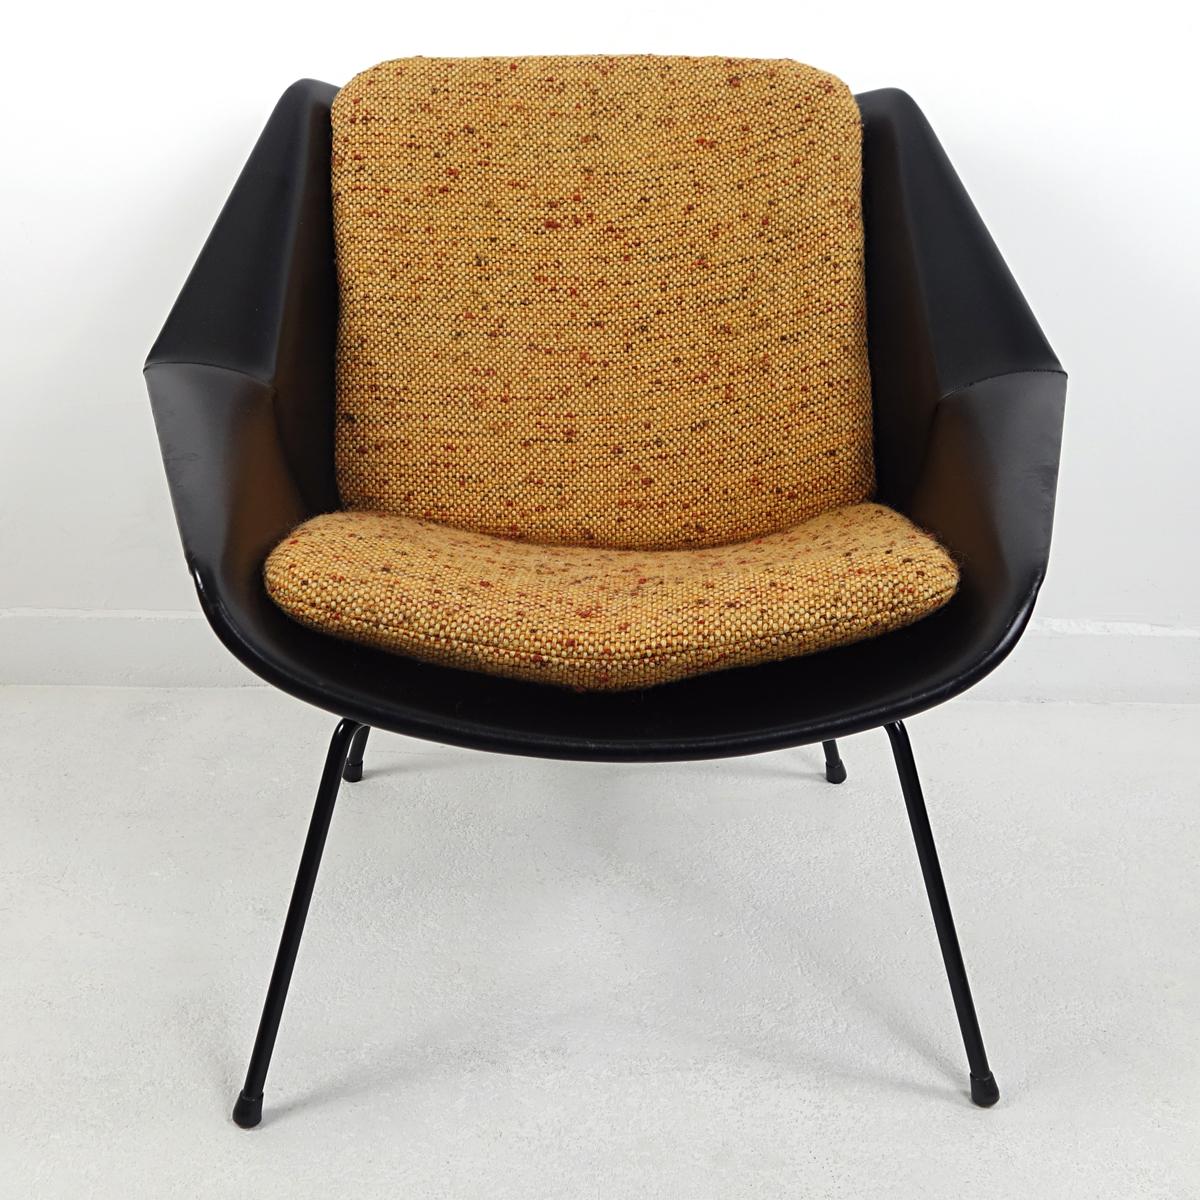 Esta butaca fue diseñada por Cees Braakman en los años 50 para el famoso fabricante holandés de muebles Pastoe. Su carcasa está recubierta de vinilo negro y se apoya sobre cuatro patas de acero negro de formas elegantes. La carcasa alberga dos